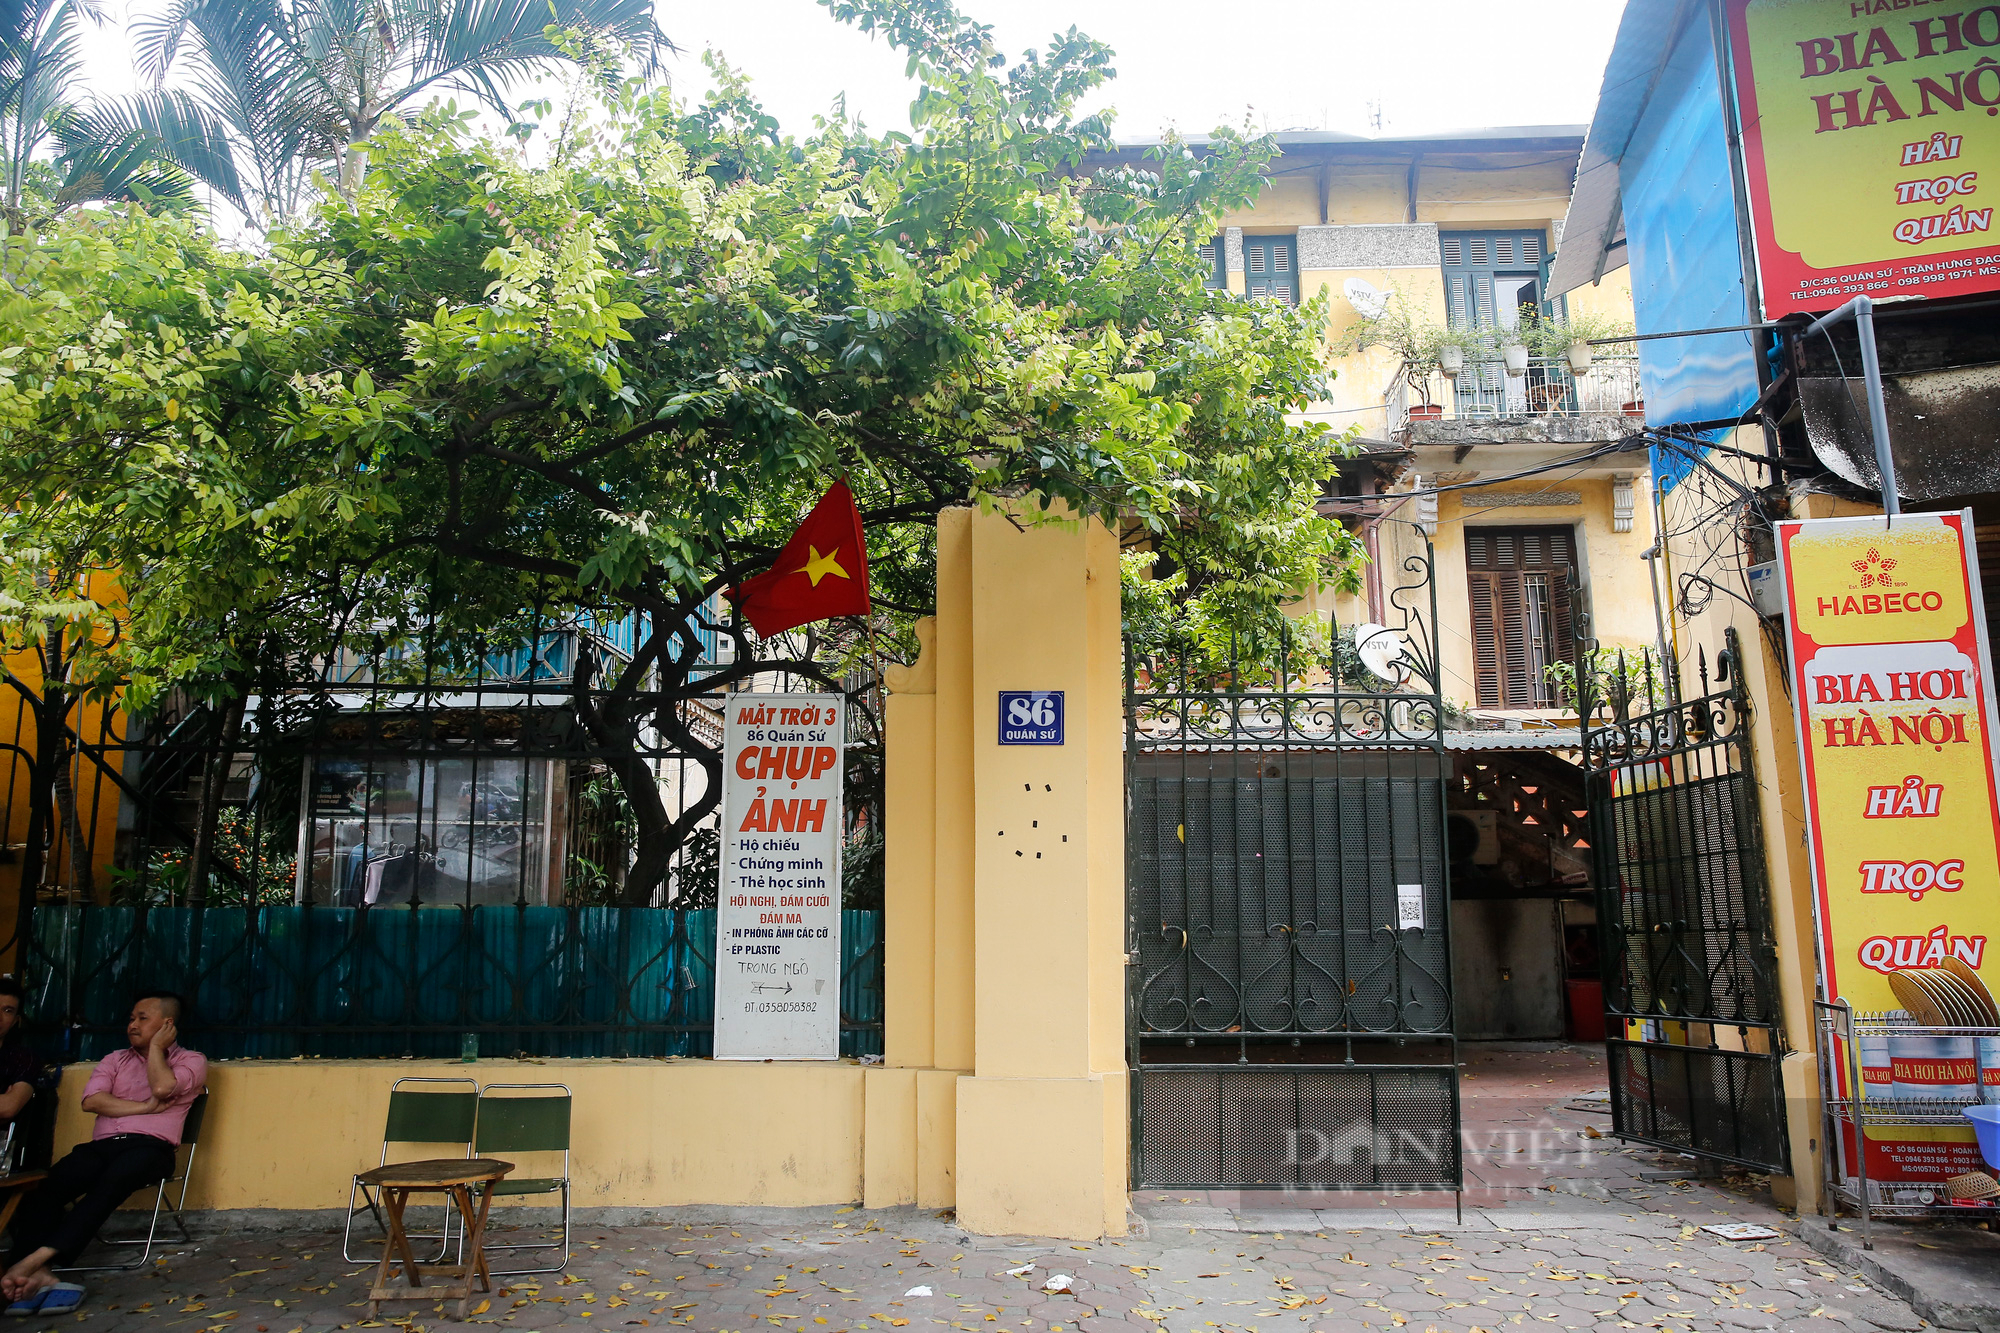 Cận cảnh những biệt thự xây trước 1954 thuộc diện không được bán tại Hà Nội - Ảnh 3.